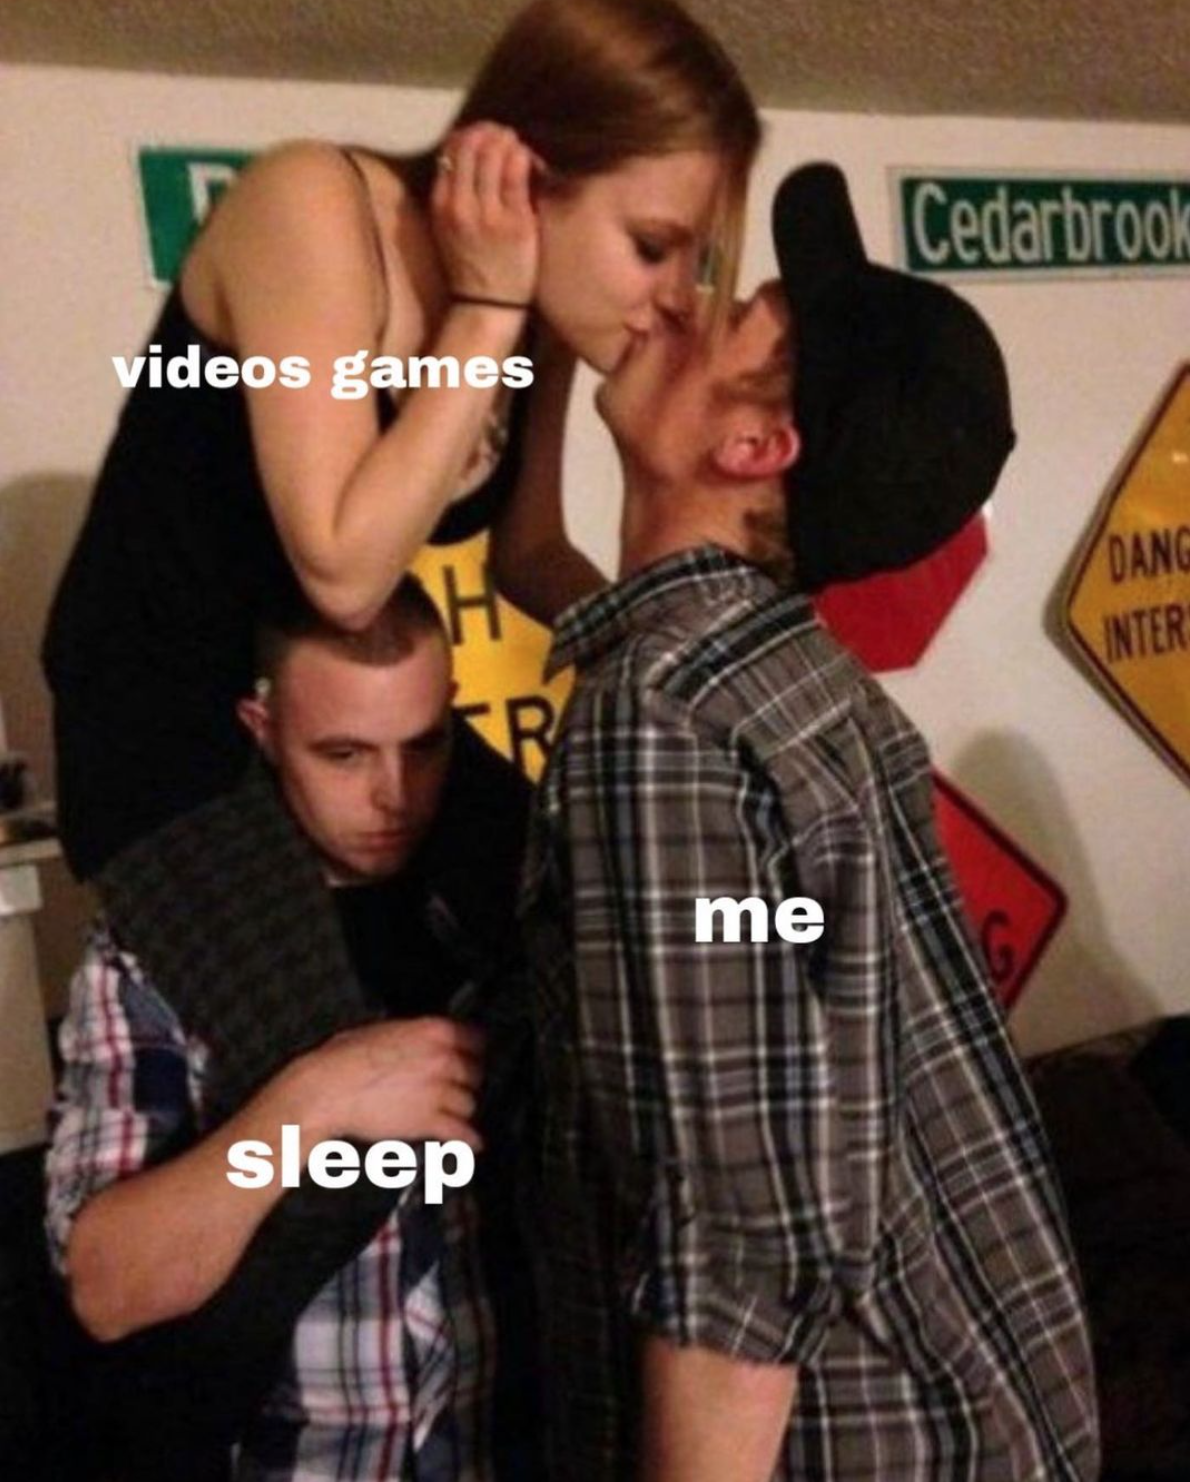 funny gaming memes  - guy kissing girl party meme - Cedarbrook videos games Oang Inter me sleep